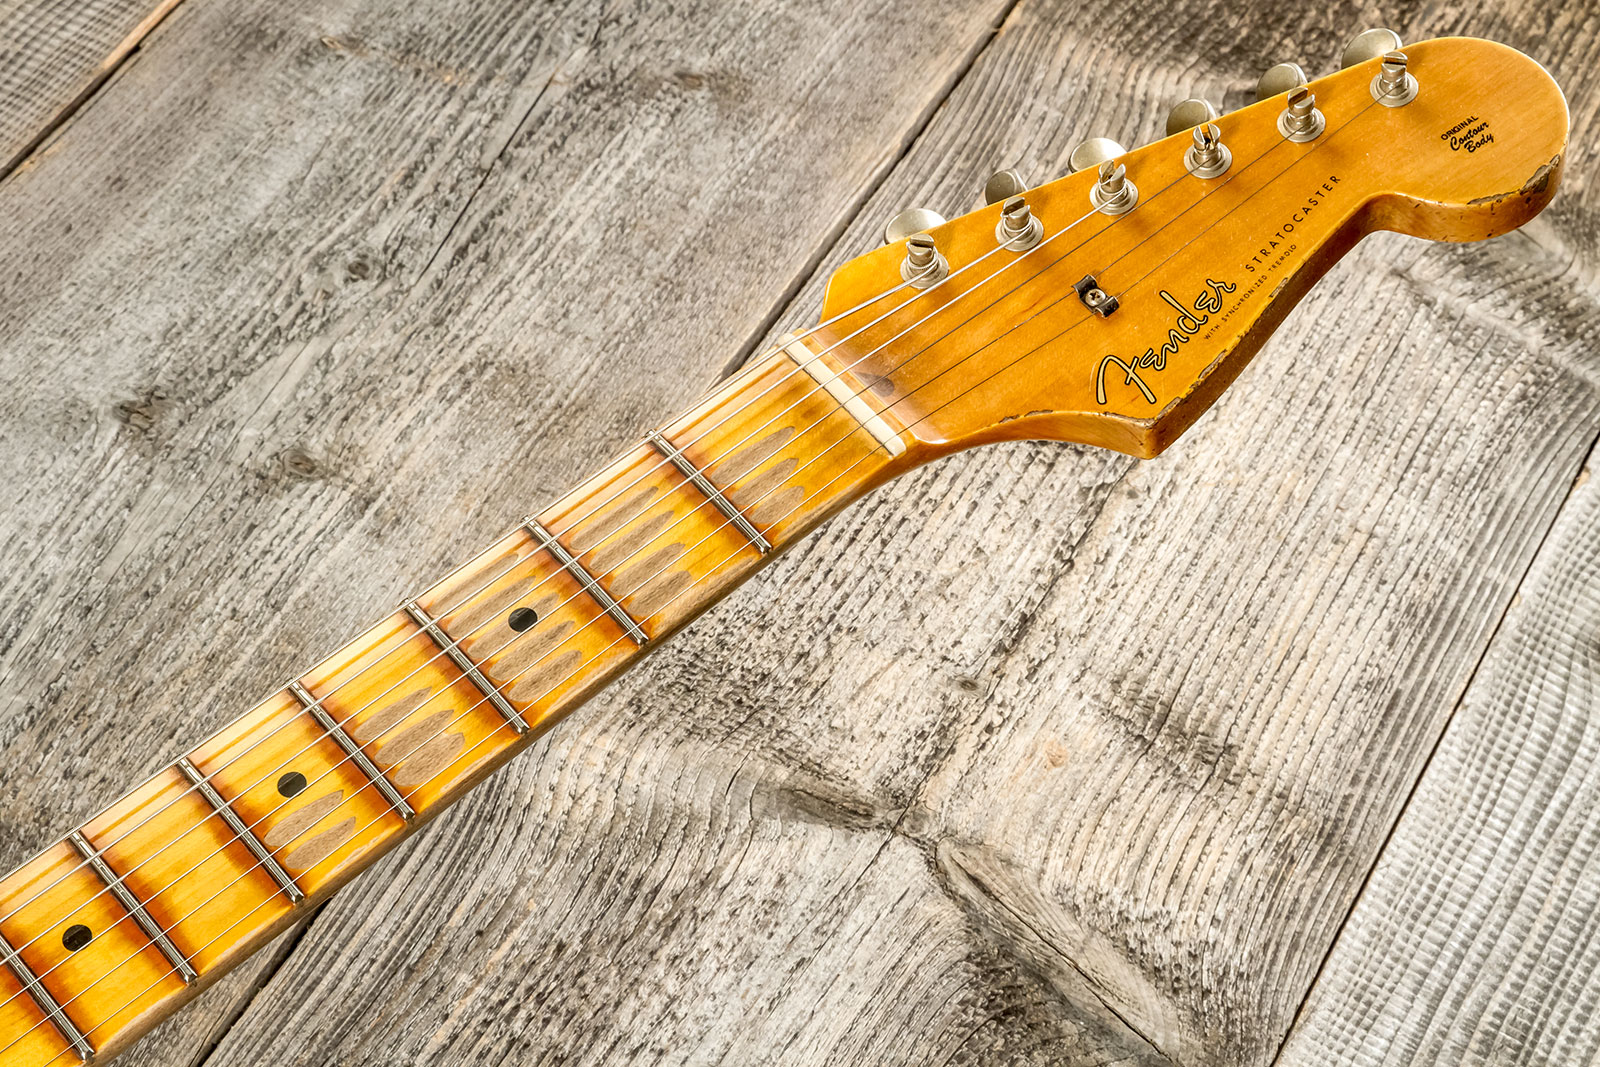 Fender Custom Shop Strat 1957 3s Trem Mn #cz575421 - Relic 2-color Sunburst - Str shape electric guitar - Variation 7